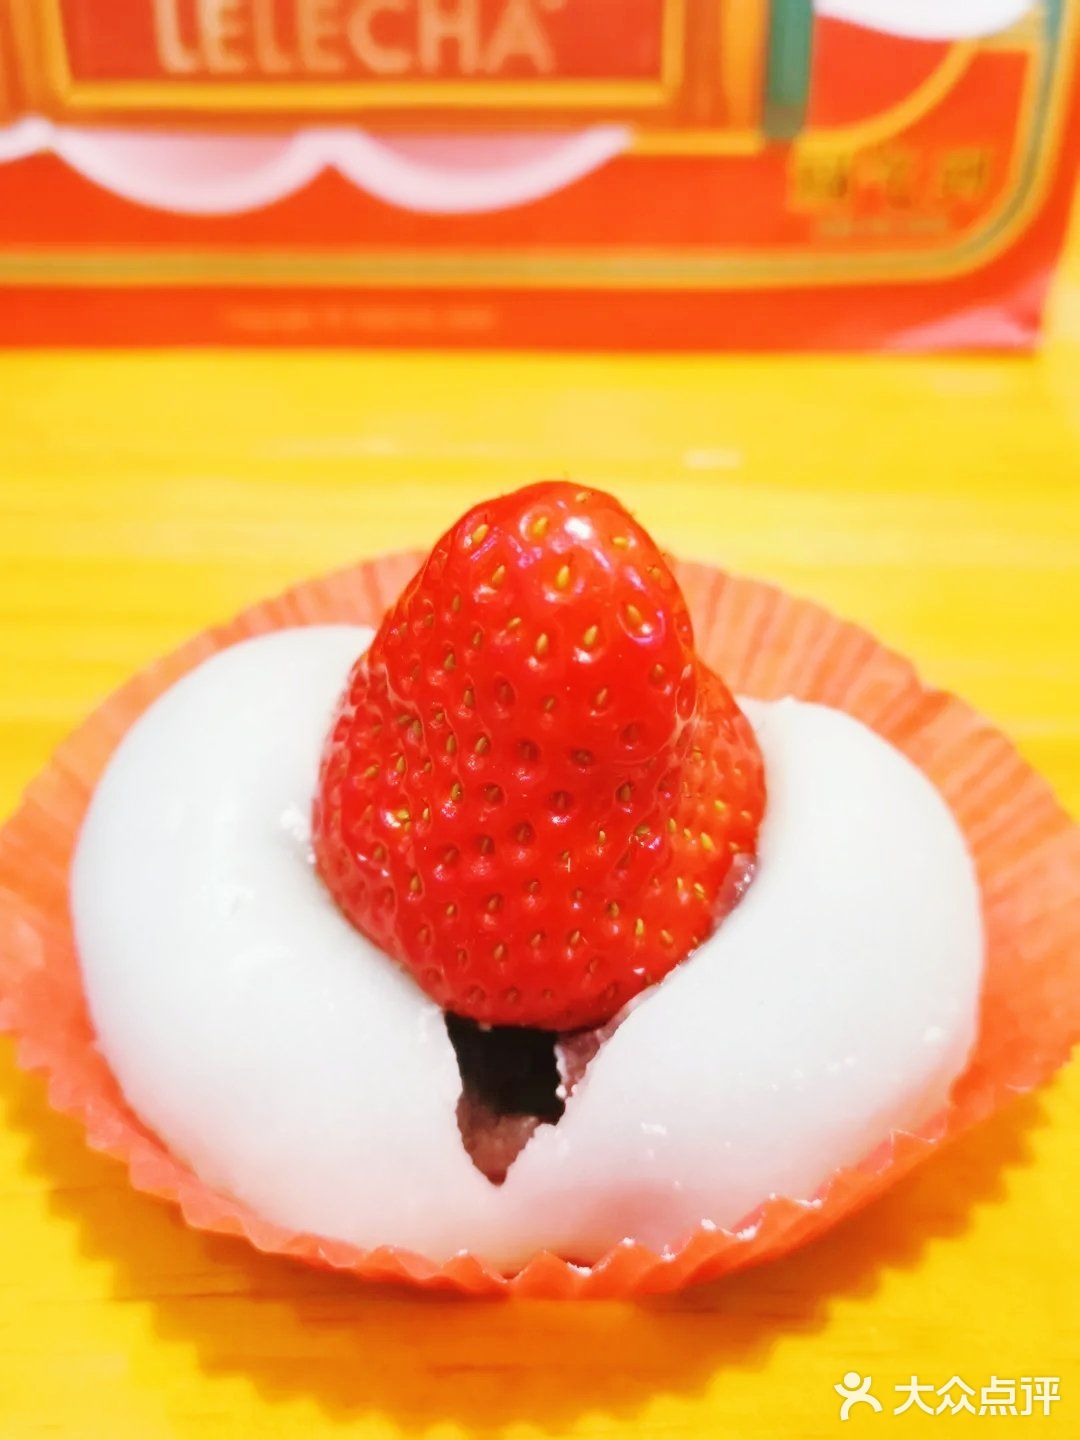 听说这是从日本过来的草莓主题店看点评上是10点营业